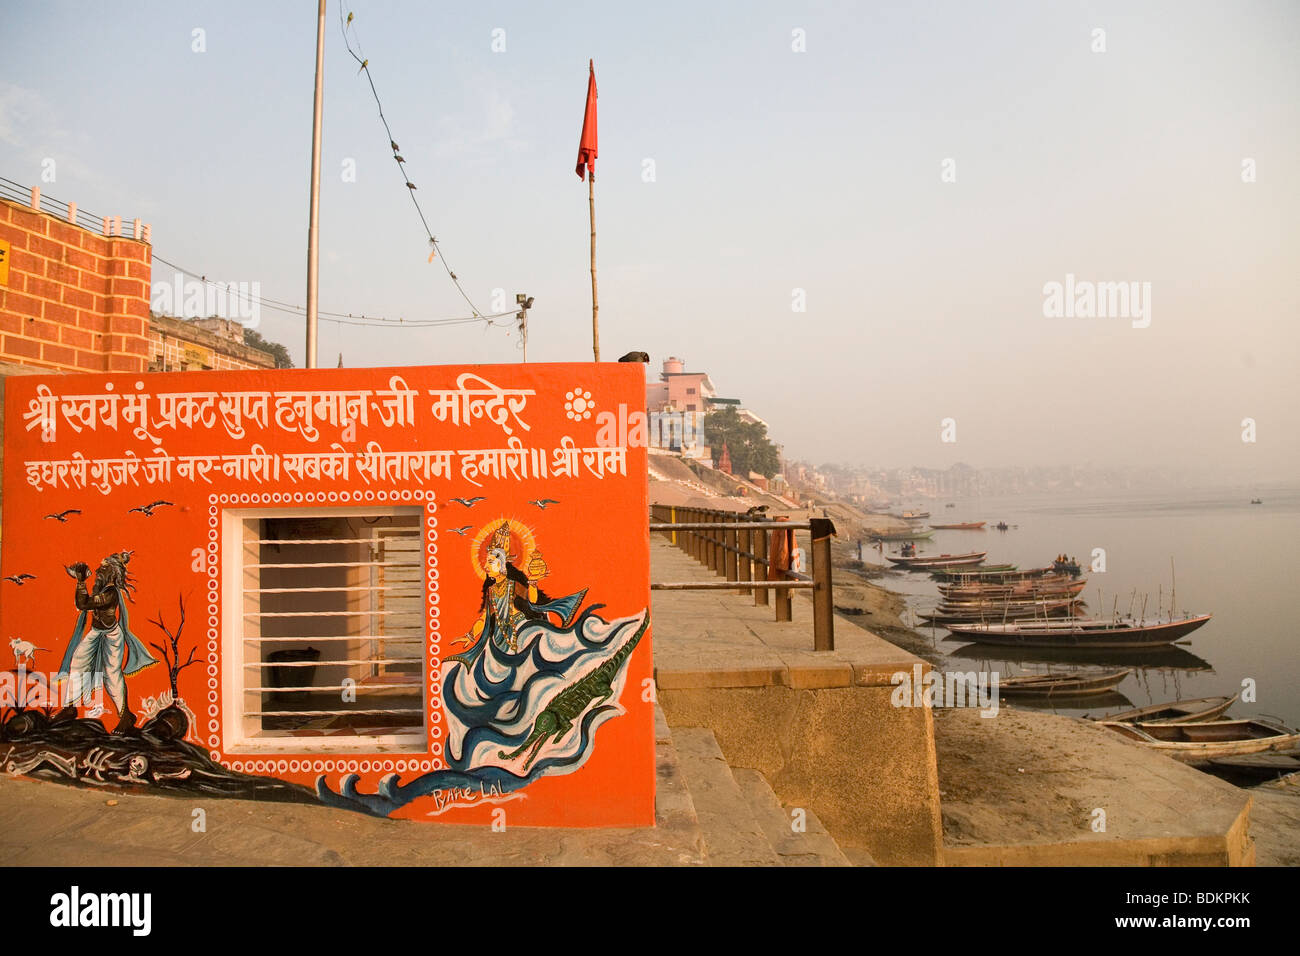 Un temple peint de couleurs vives, se situe sur les rives de la rivière Ganga (le Gange) à Varanasi, Inde. Banque D'Images